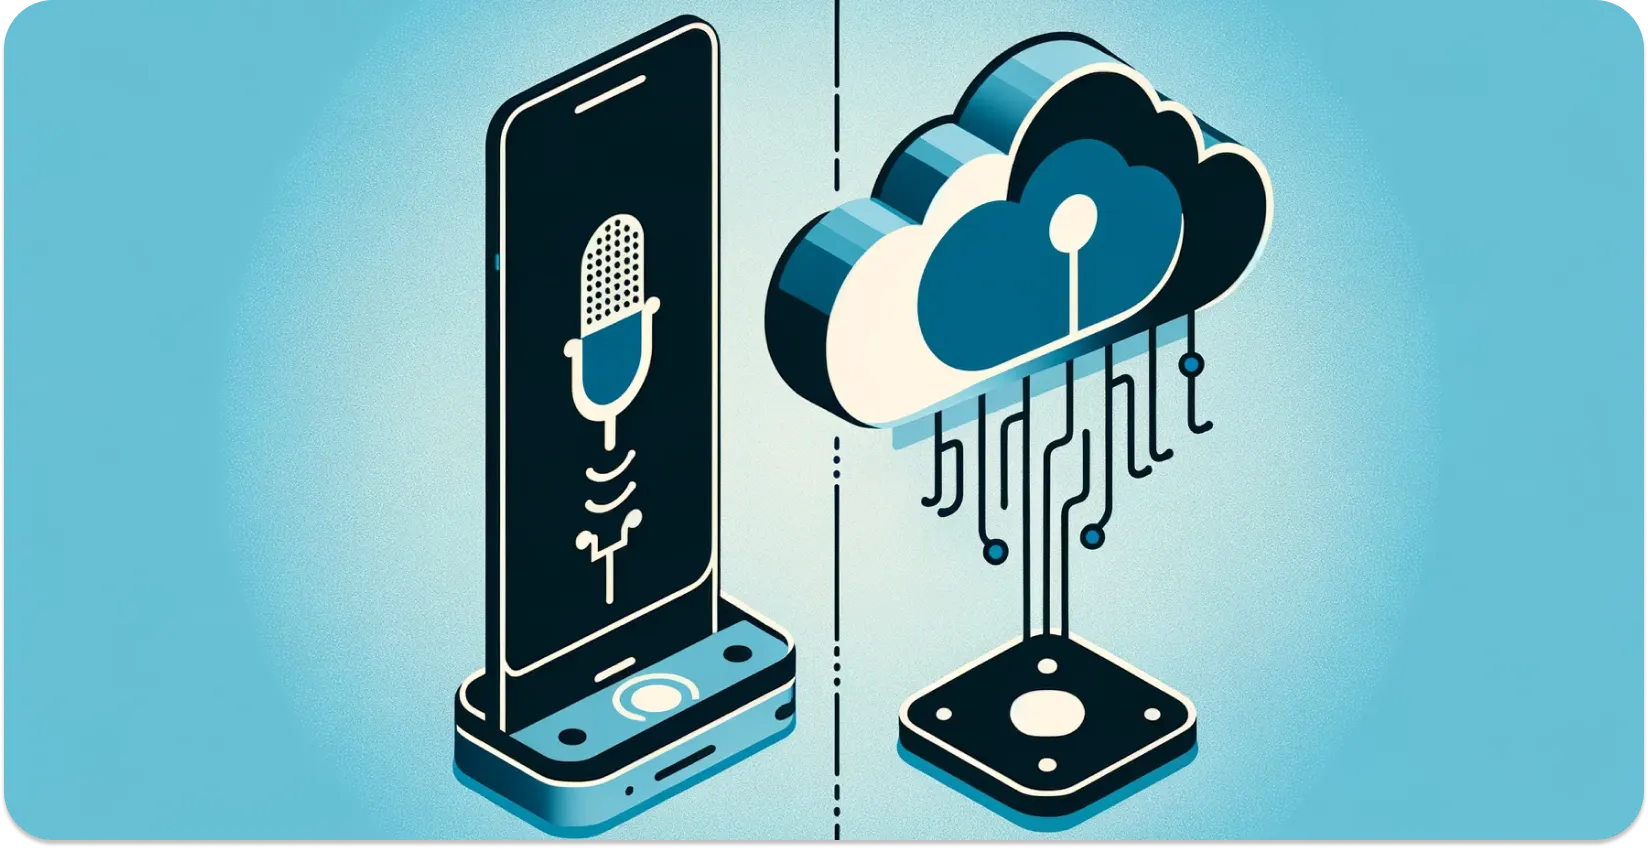 Tipo de reconhecimento de fala incorporado e baseado em nuvem no uso diário da tecnologia.